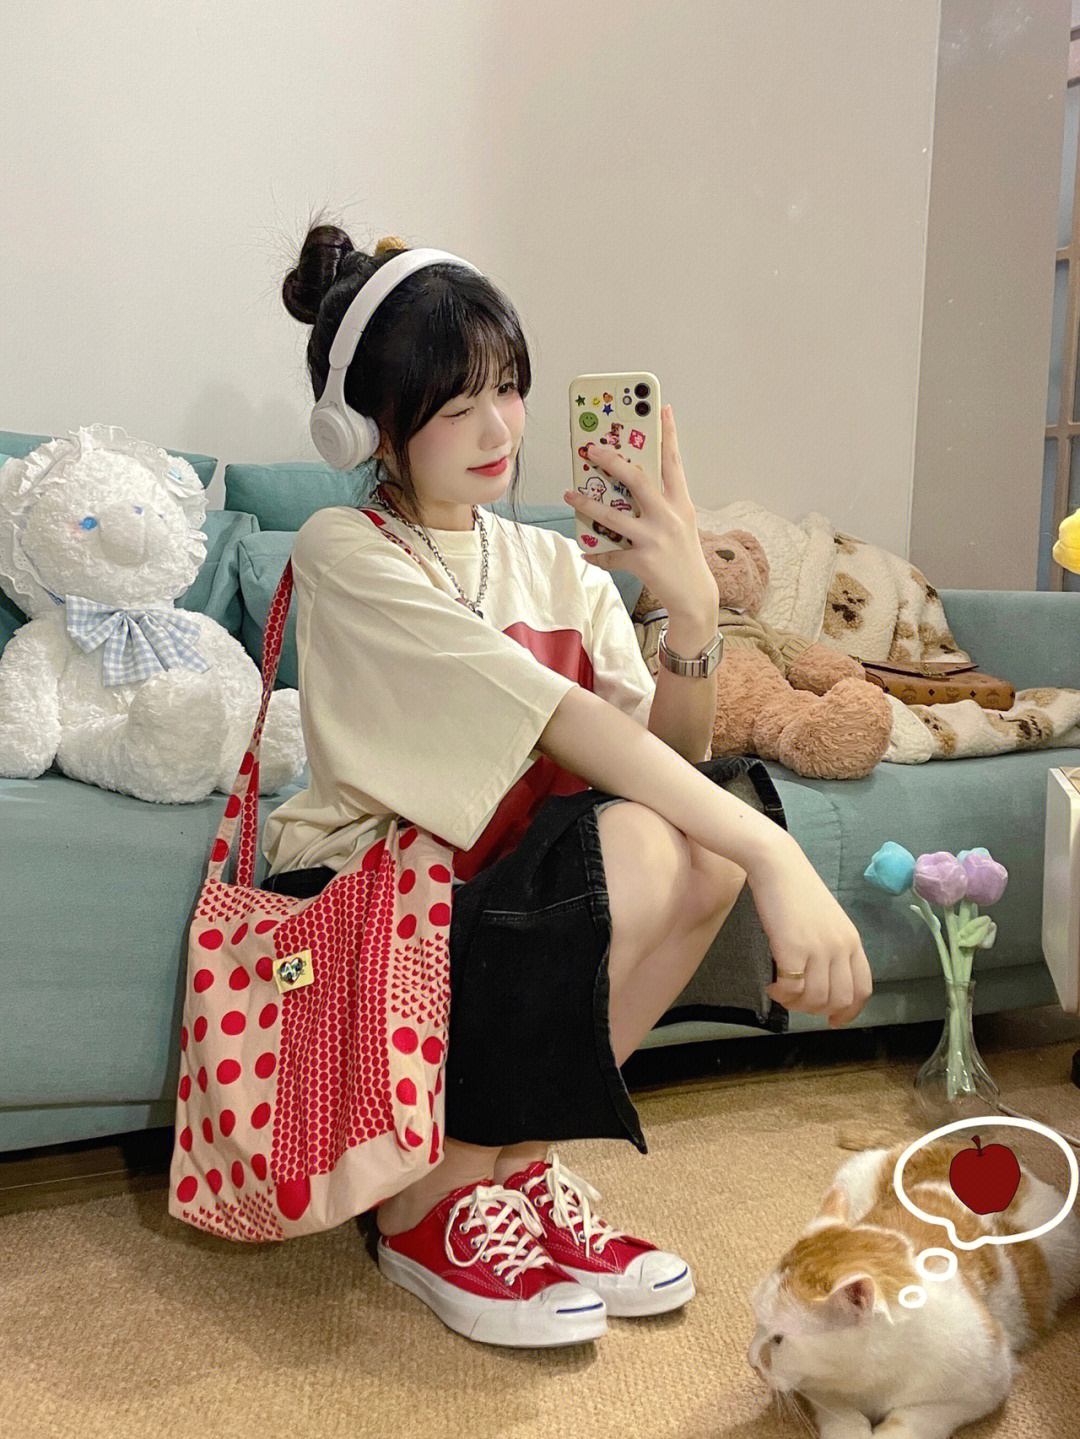 嘻嘻今天是韩系甜妹穿搭扎个丸子头 穿可爱韩系的红苹果短袖～搭配